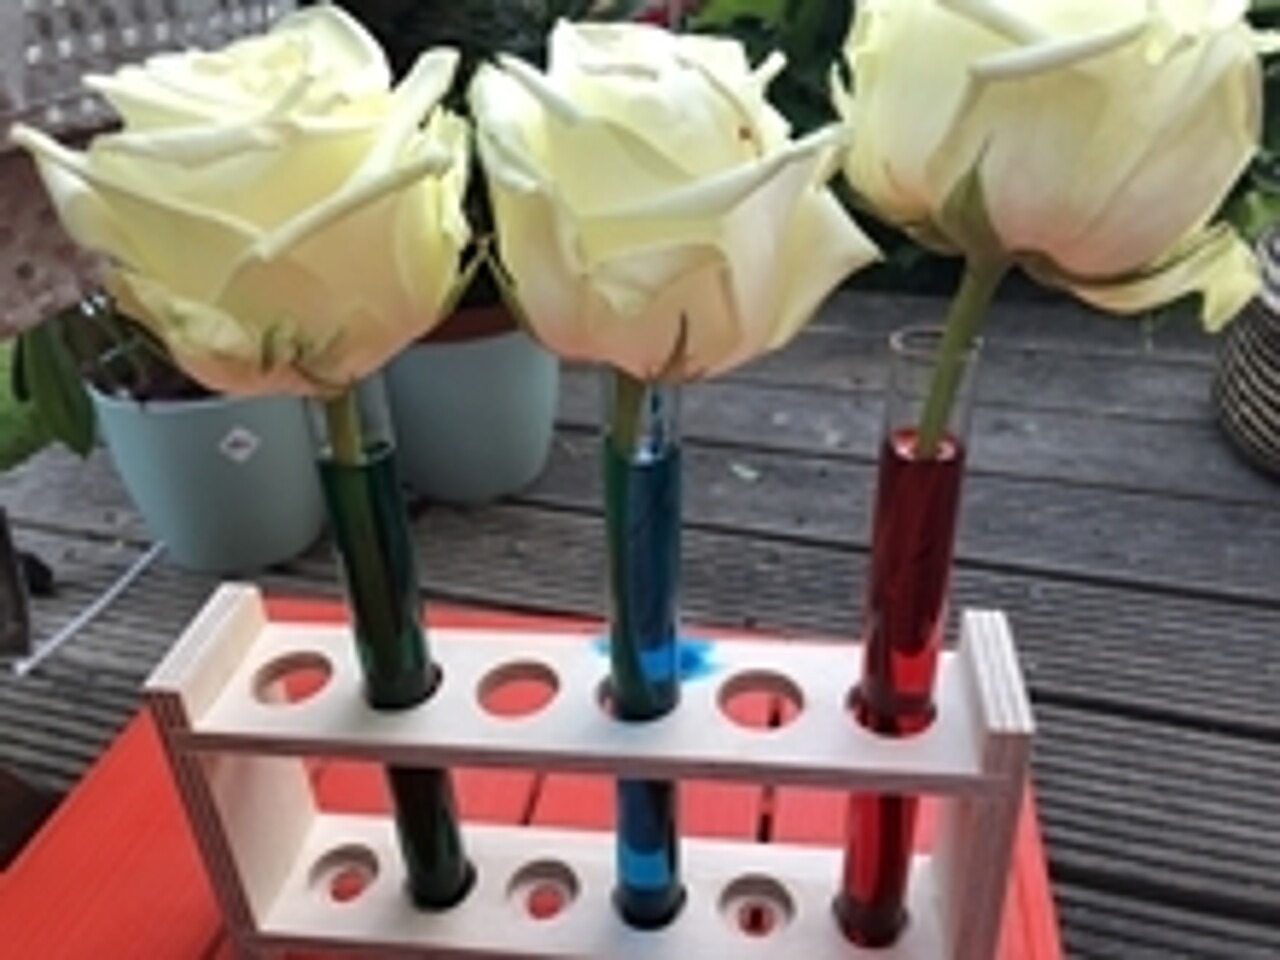 drei weiße Rosen in Gläsern mit farbigem Wasser